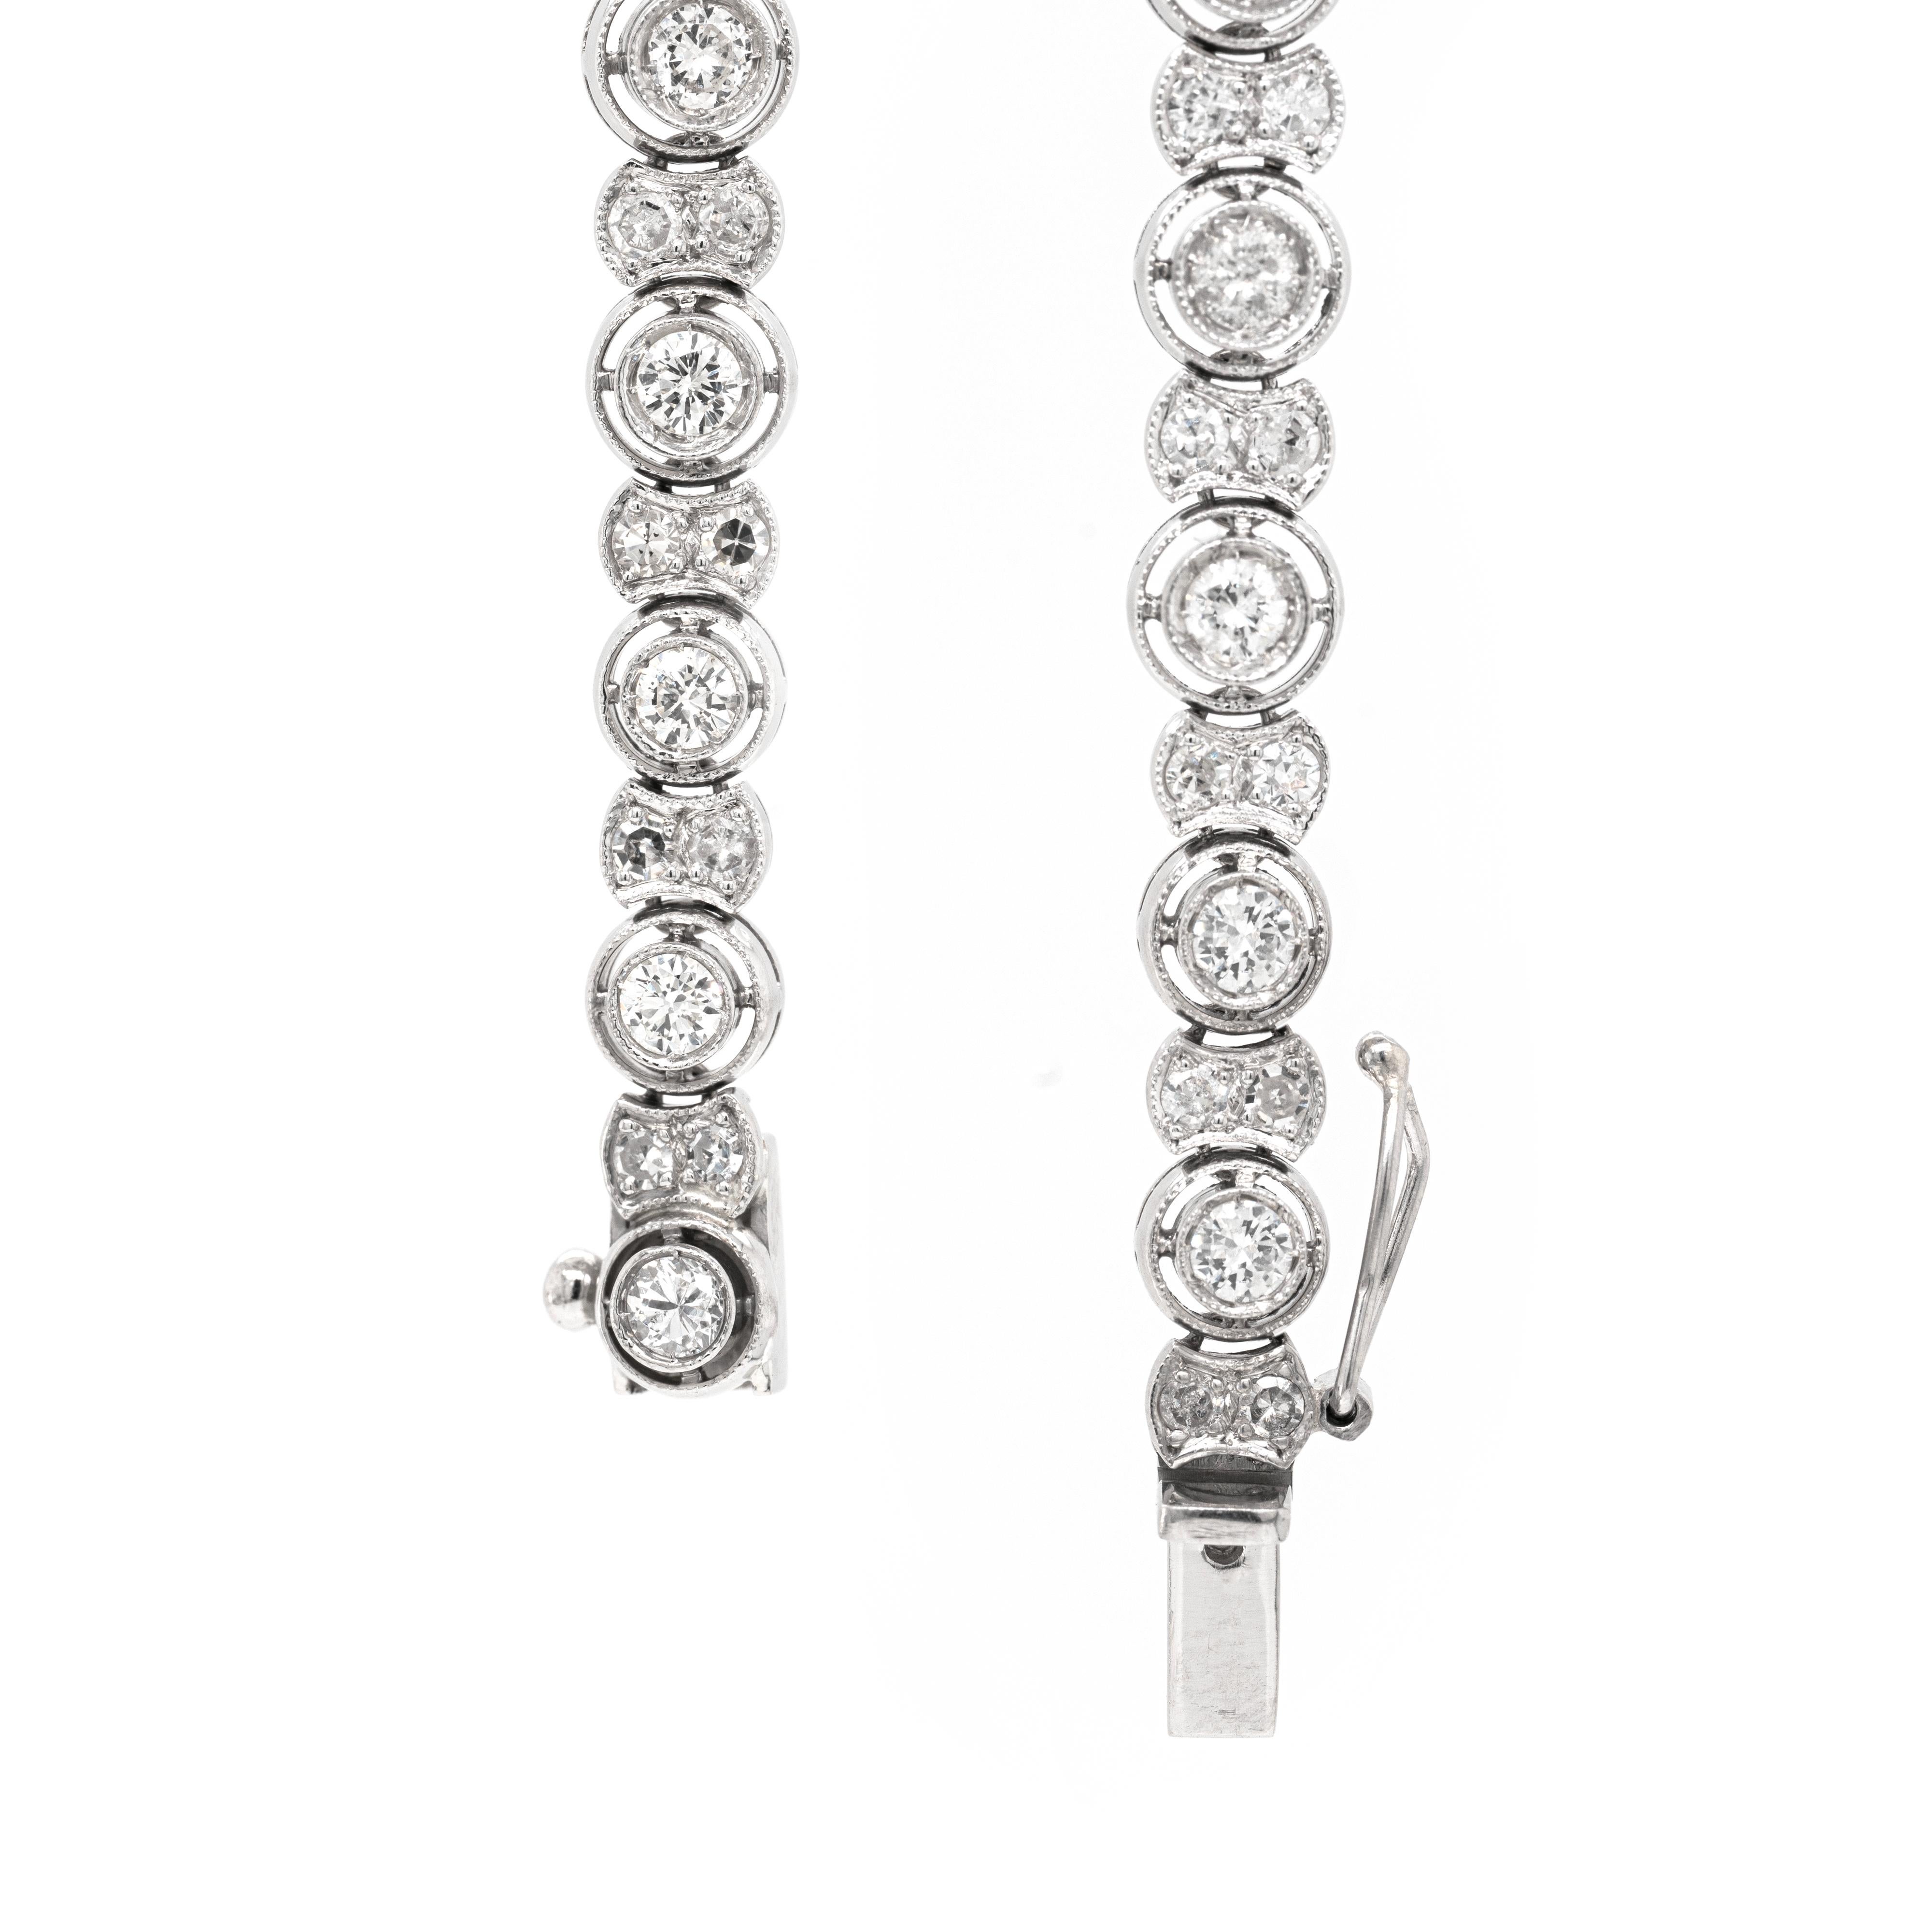 Bei diesem Vintage-Tennisarmband wechseln sich Glieder mit einem einzelnen runden Diamanten im Brillantschliff in einer durchbrochenen Fassung und kleinere Glieder mit zwei Diamanten im Achtschliff ab, die alle in Platin gefasst sind. Mit einem